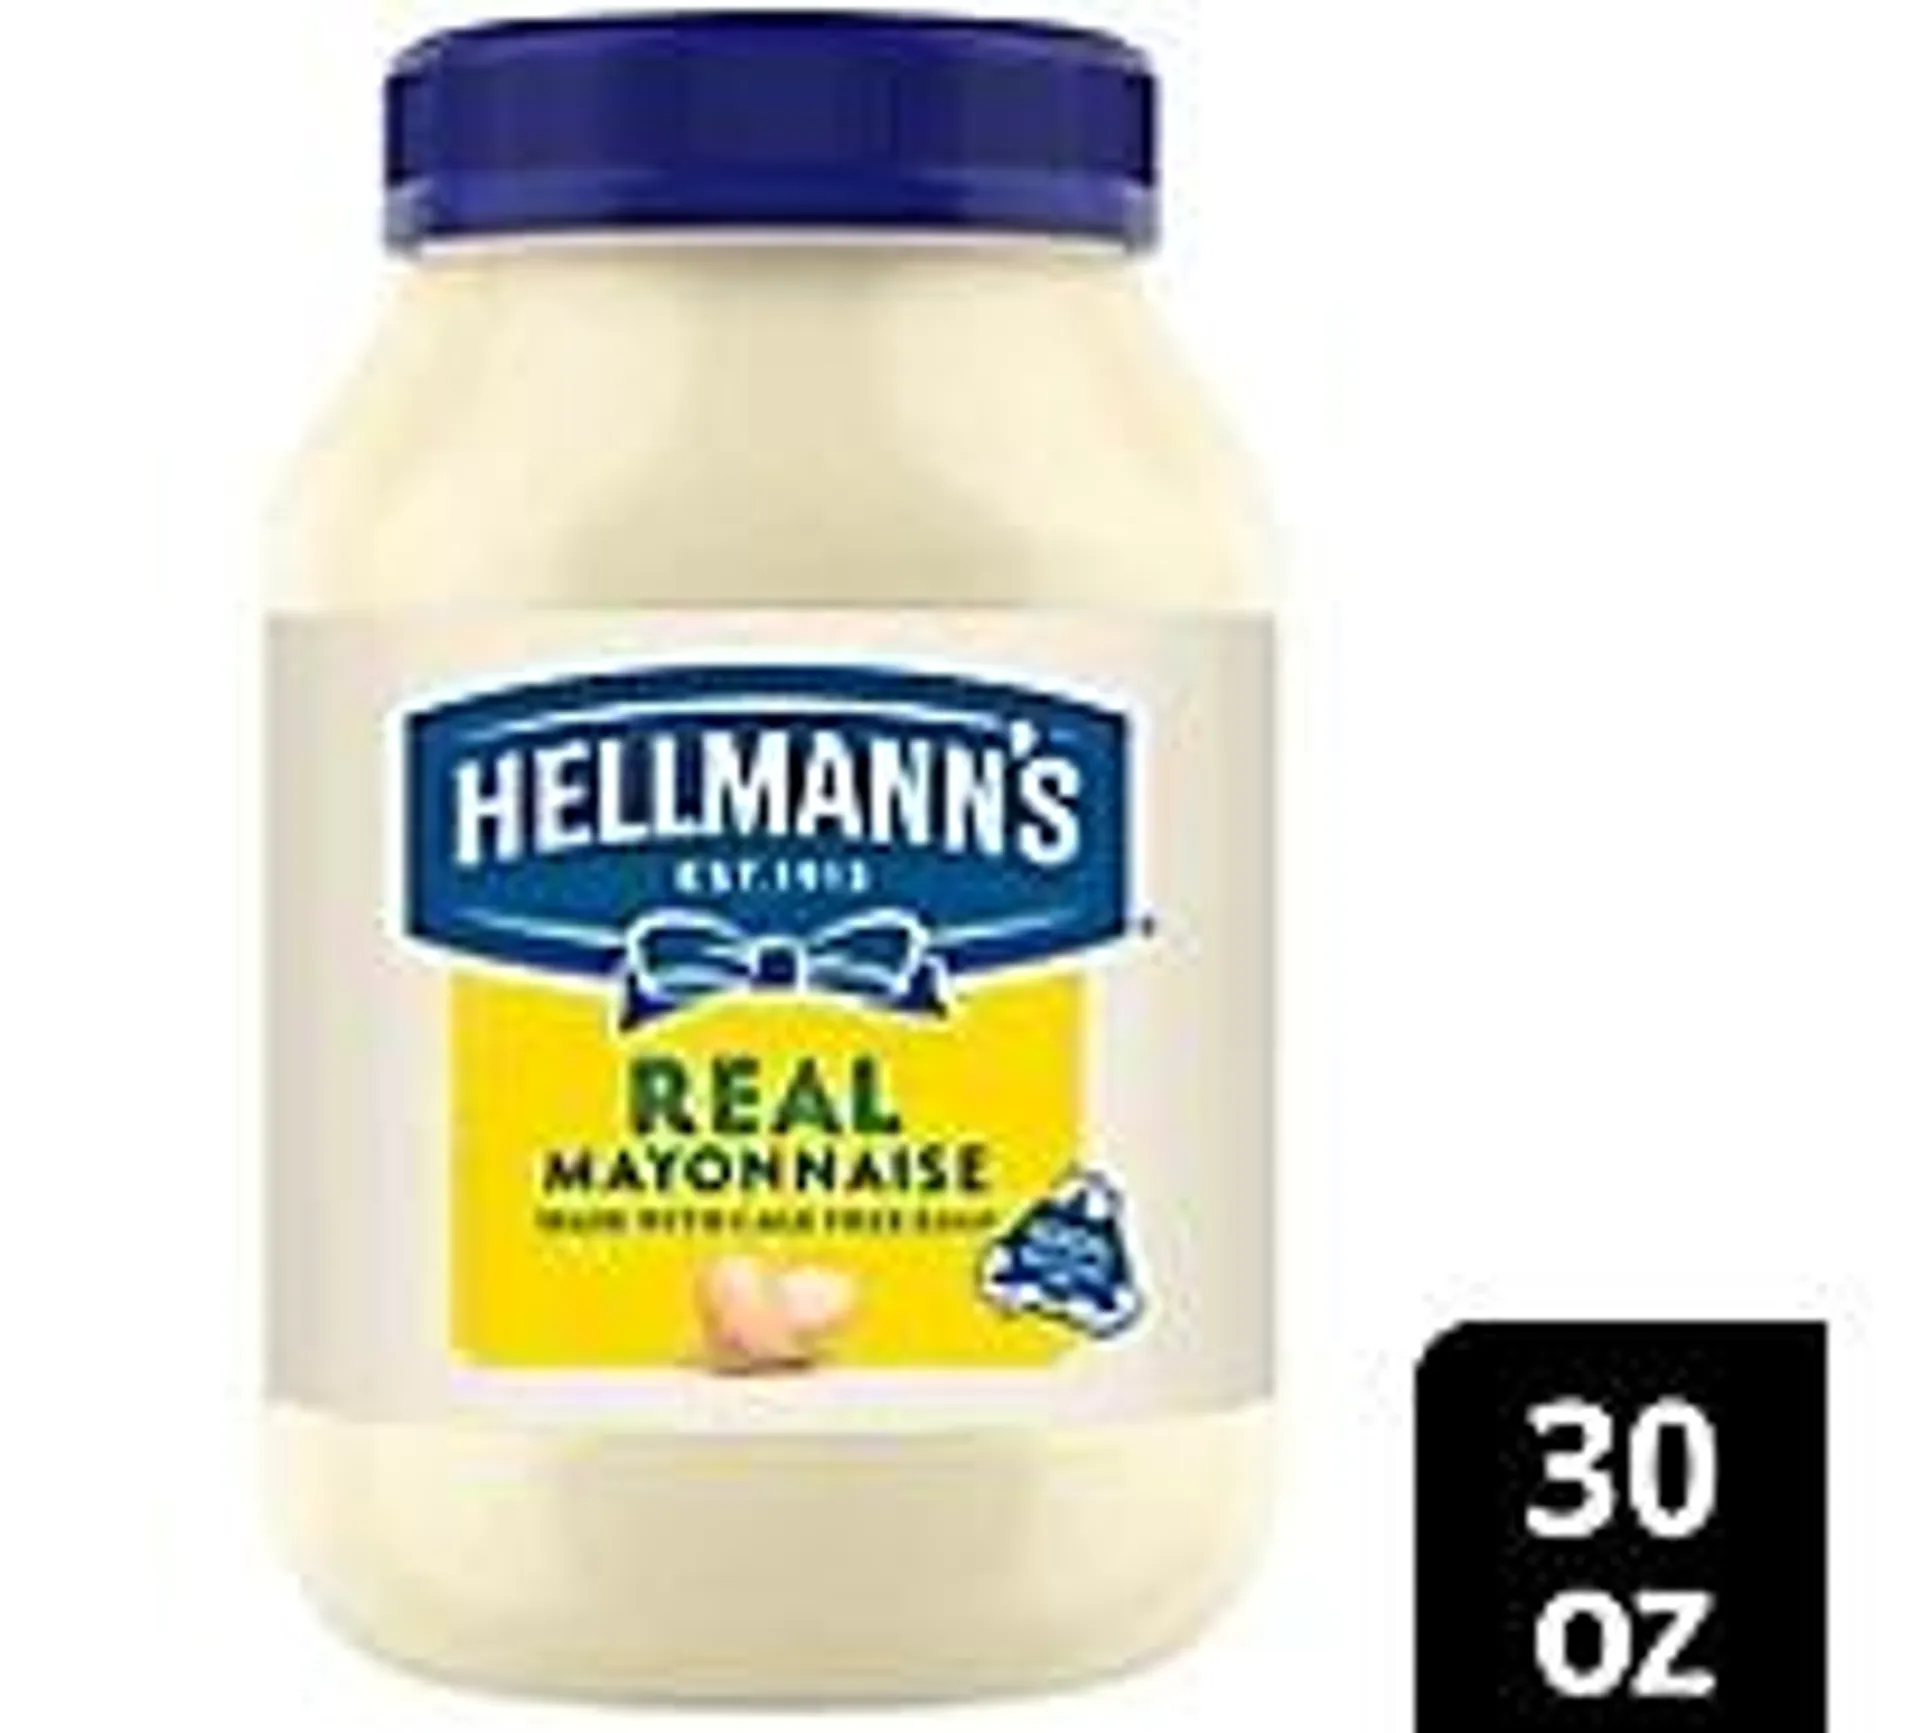 Hellmann's Real Mayonnaise - 30 Oz